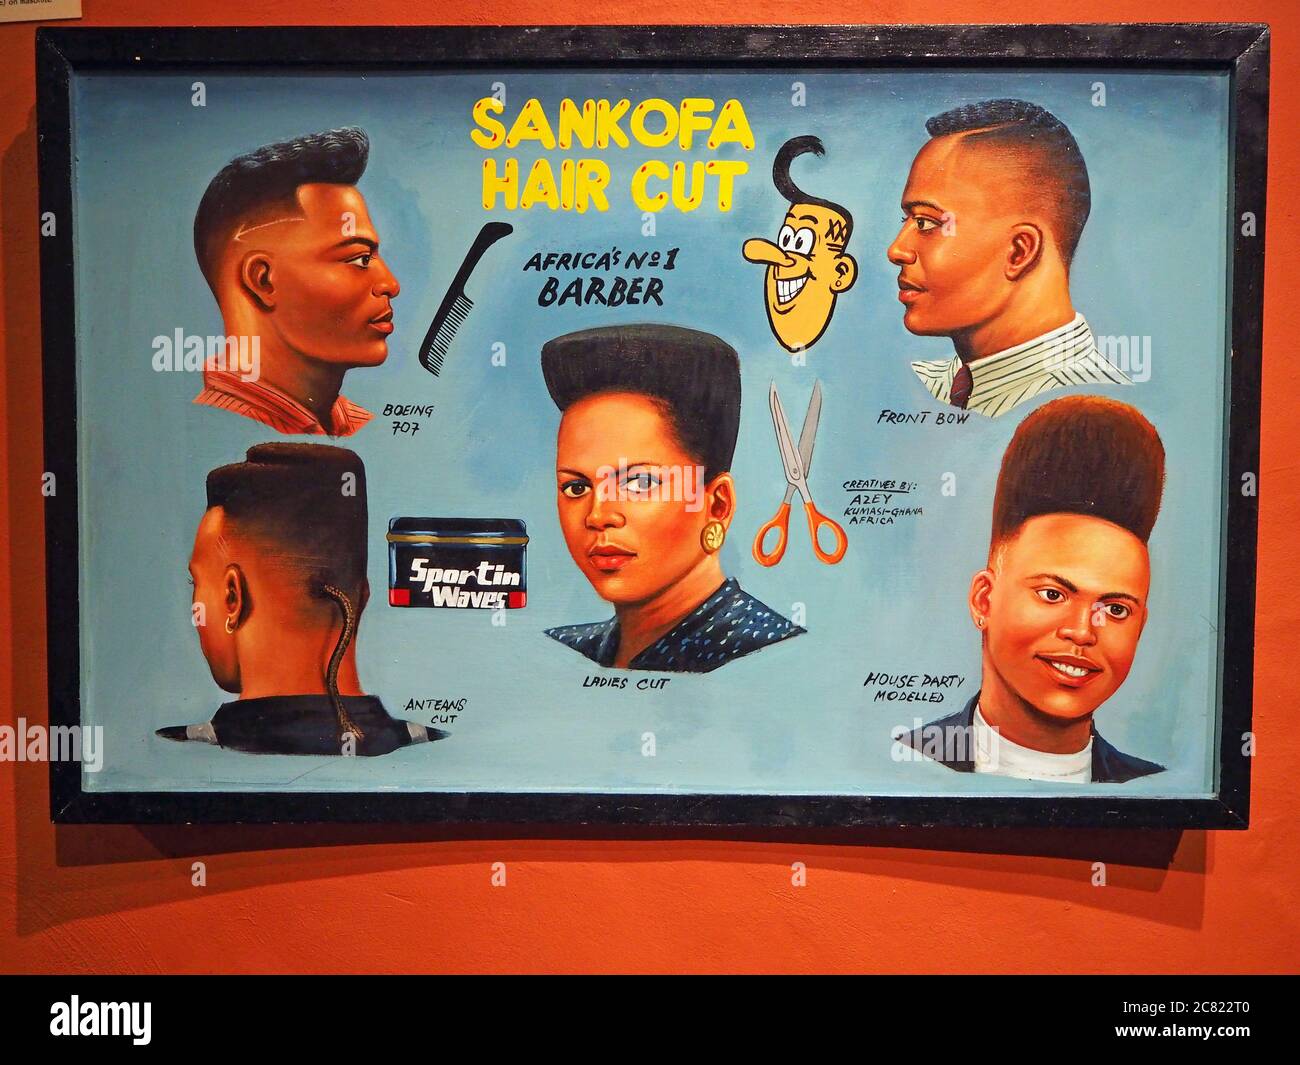 Sankofa Hair Cut, panneau de coiffeur africain, Calgary, Alberta, Canada Banque D'Images